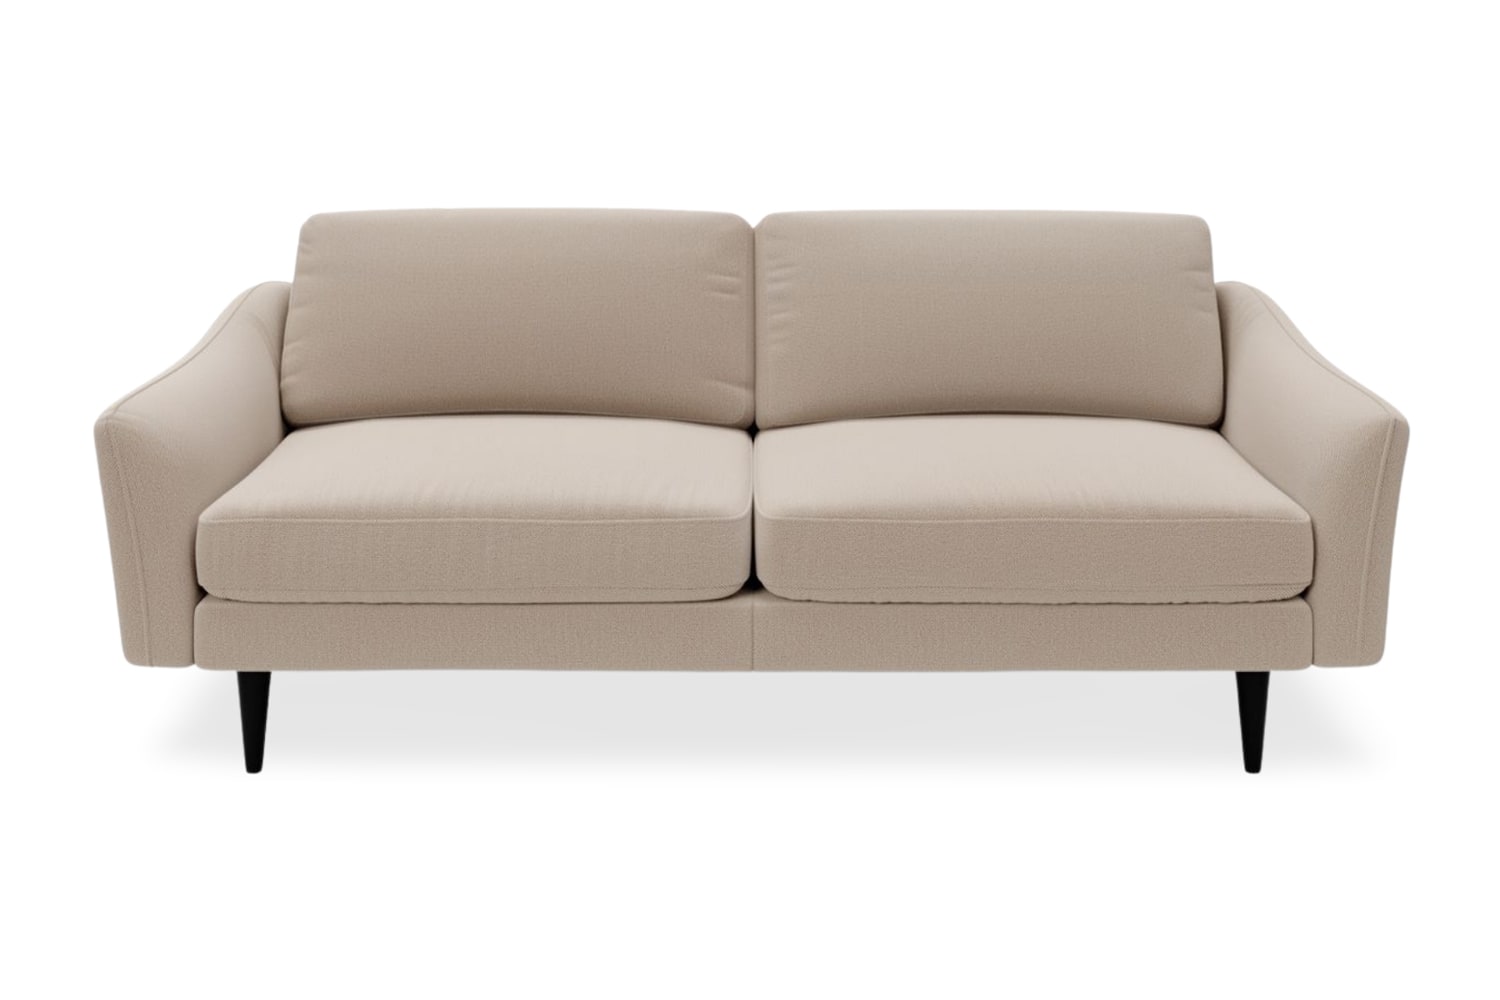 SNUG | The Rebel 3 Seater Sofa in Oatmeal variant_40414890393648